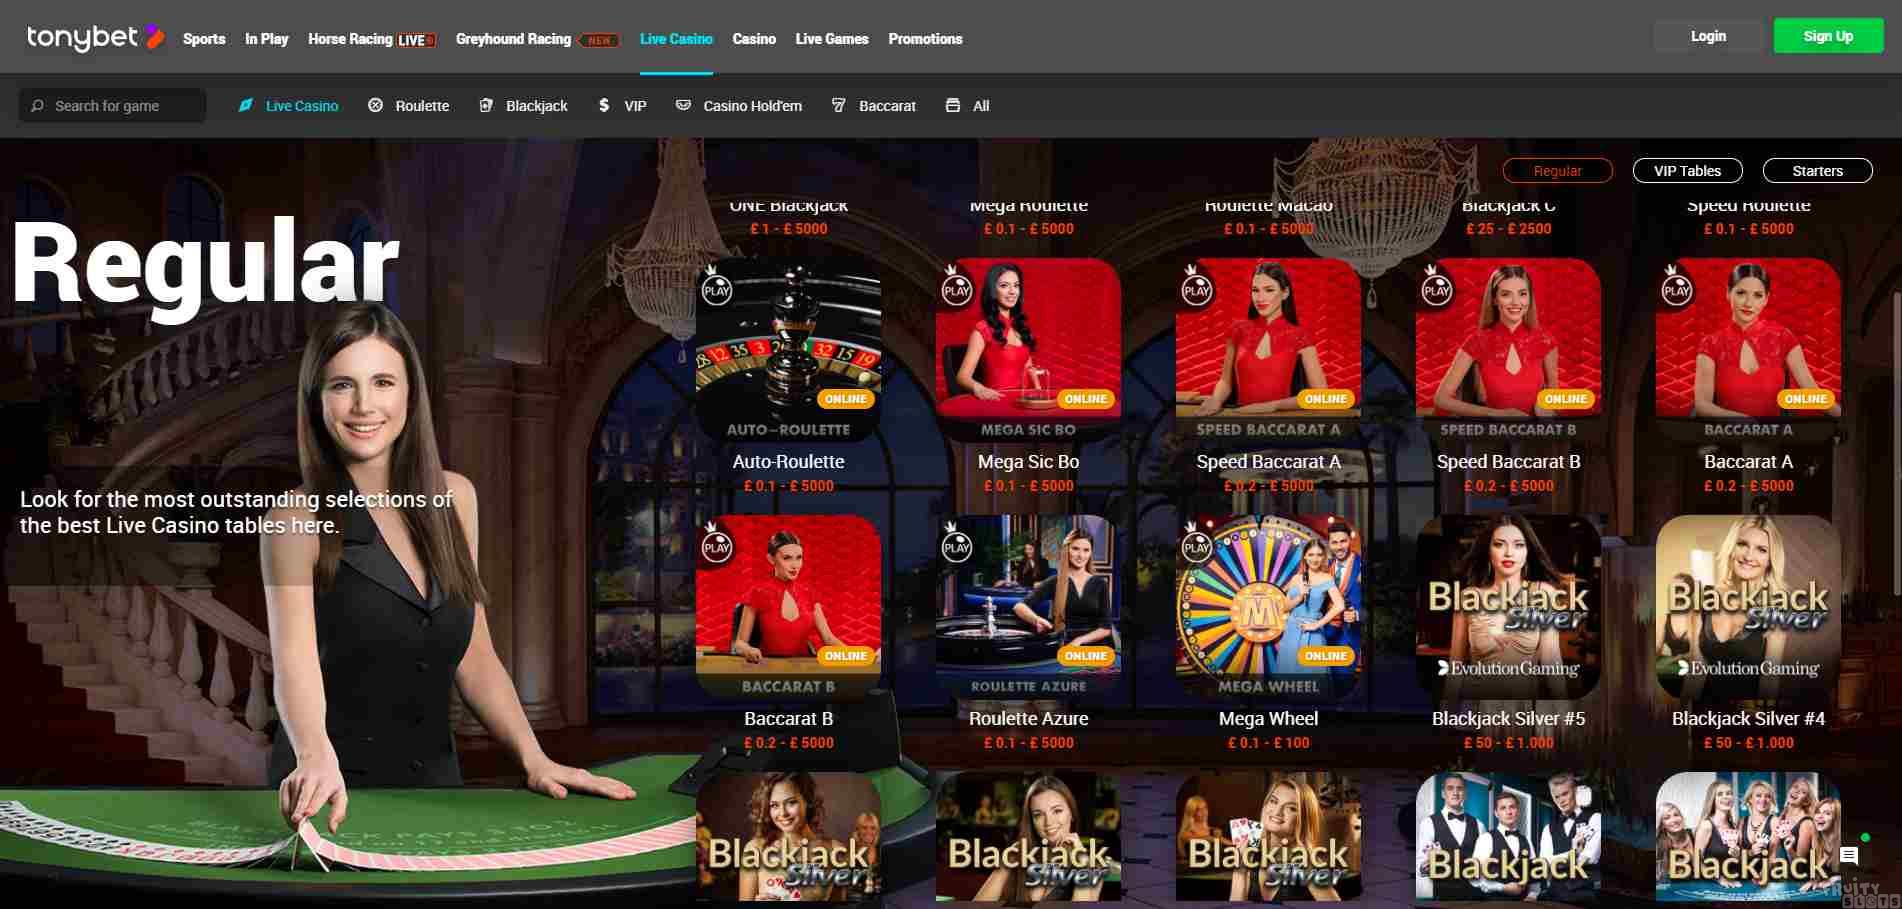 Tony Bet Live Casino